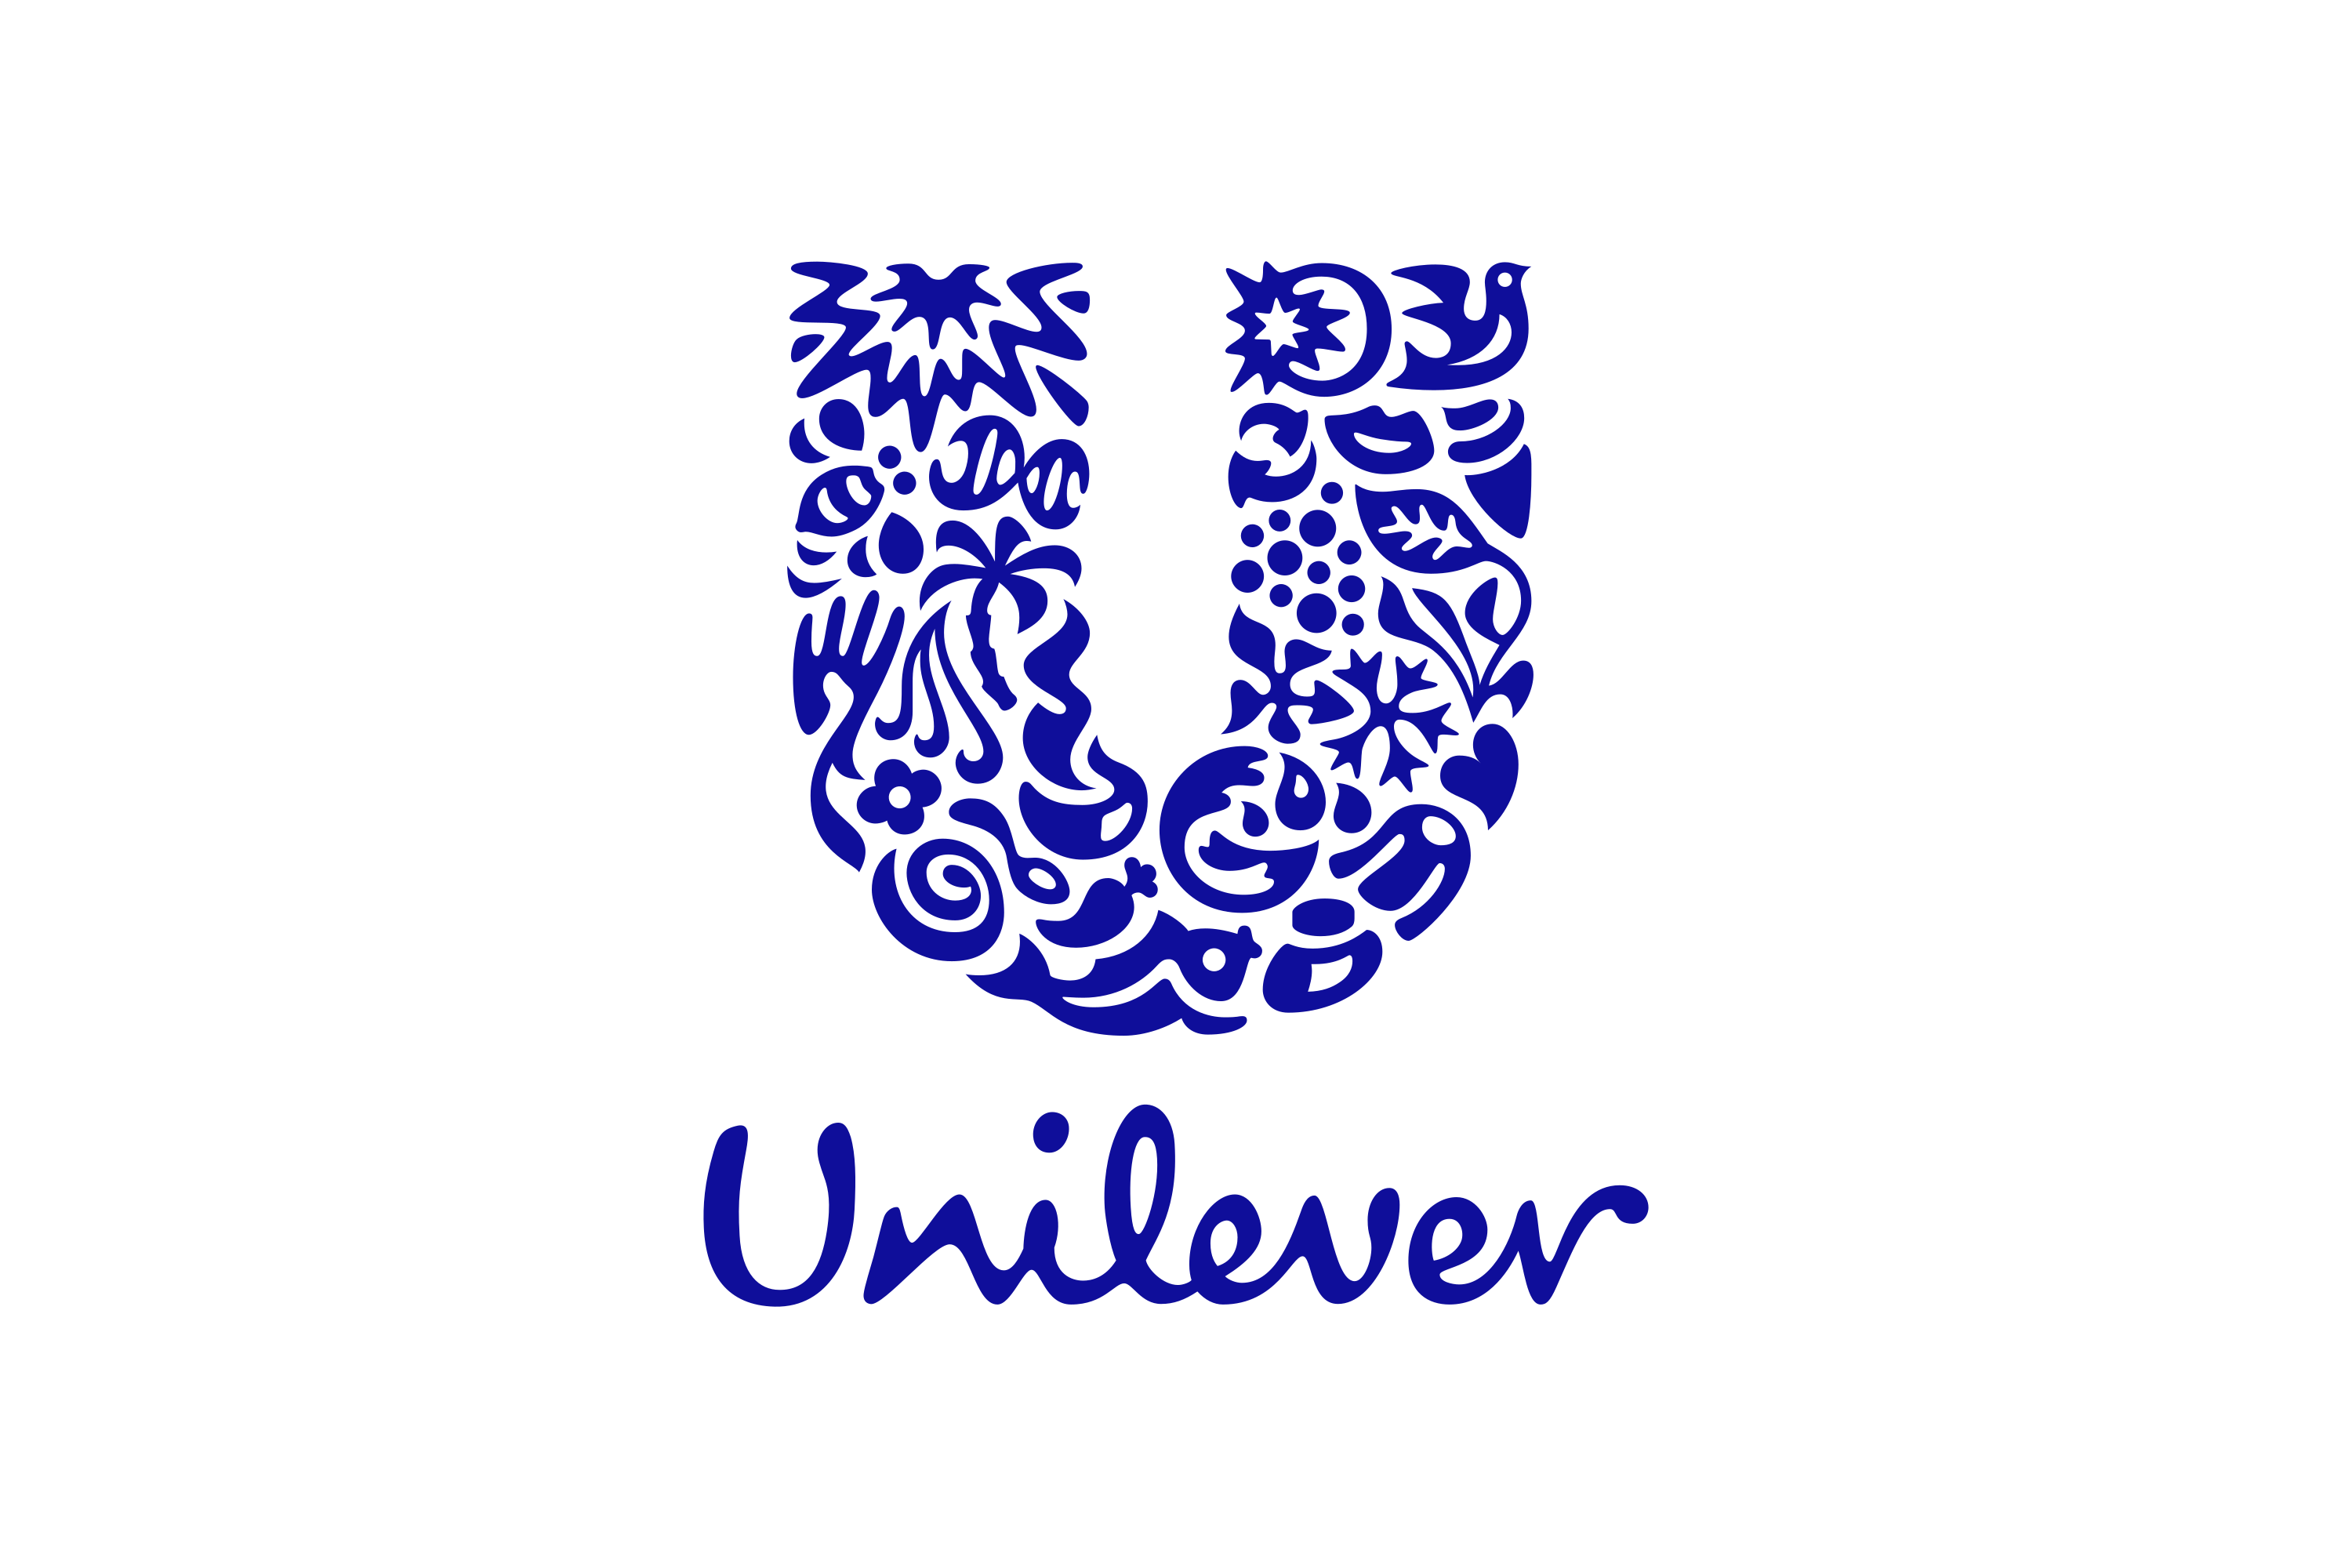 Download Unilever Logo in SVG Vector or PNG File Format - Logo.wine